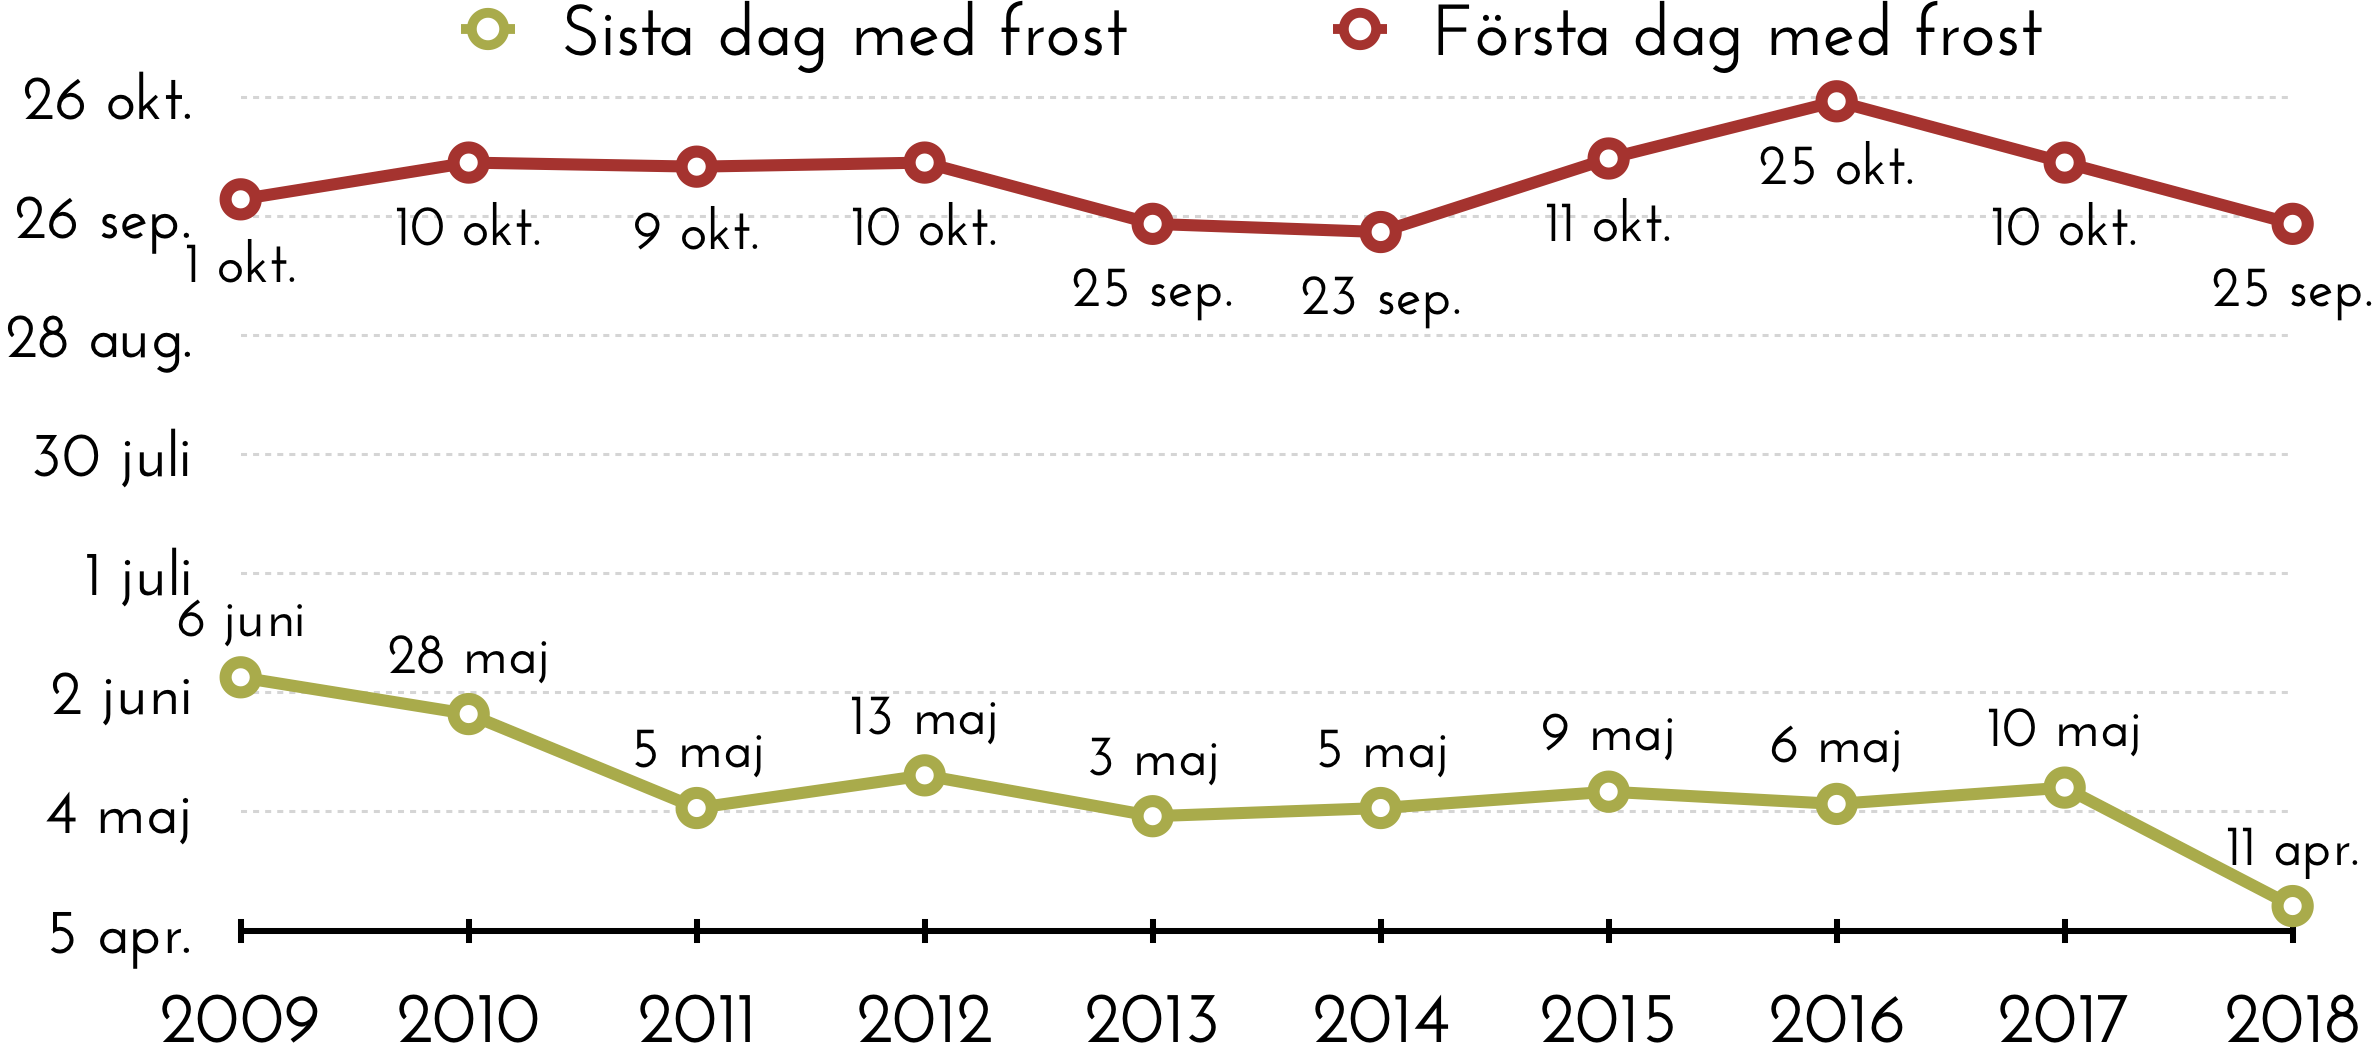 Första och sista dag med frost i Sundhult 2009-2018